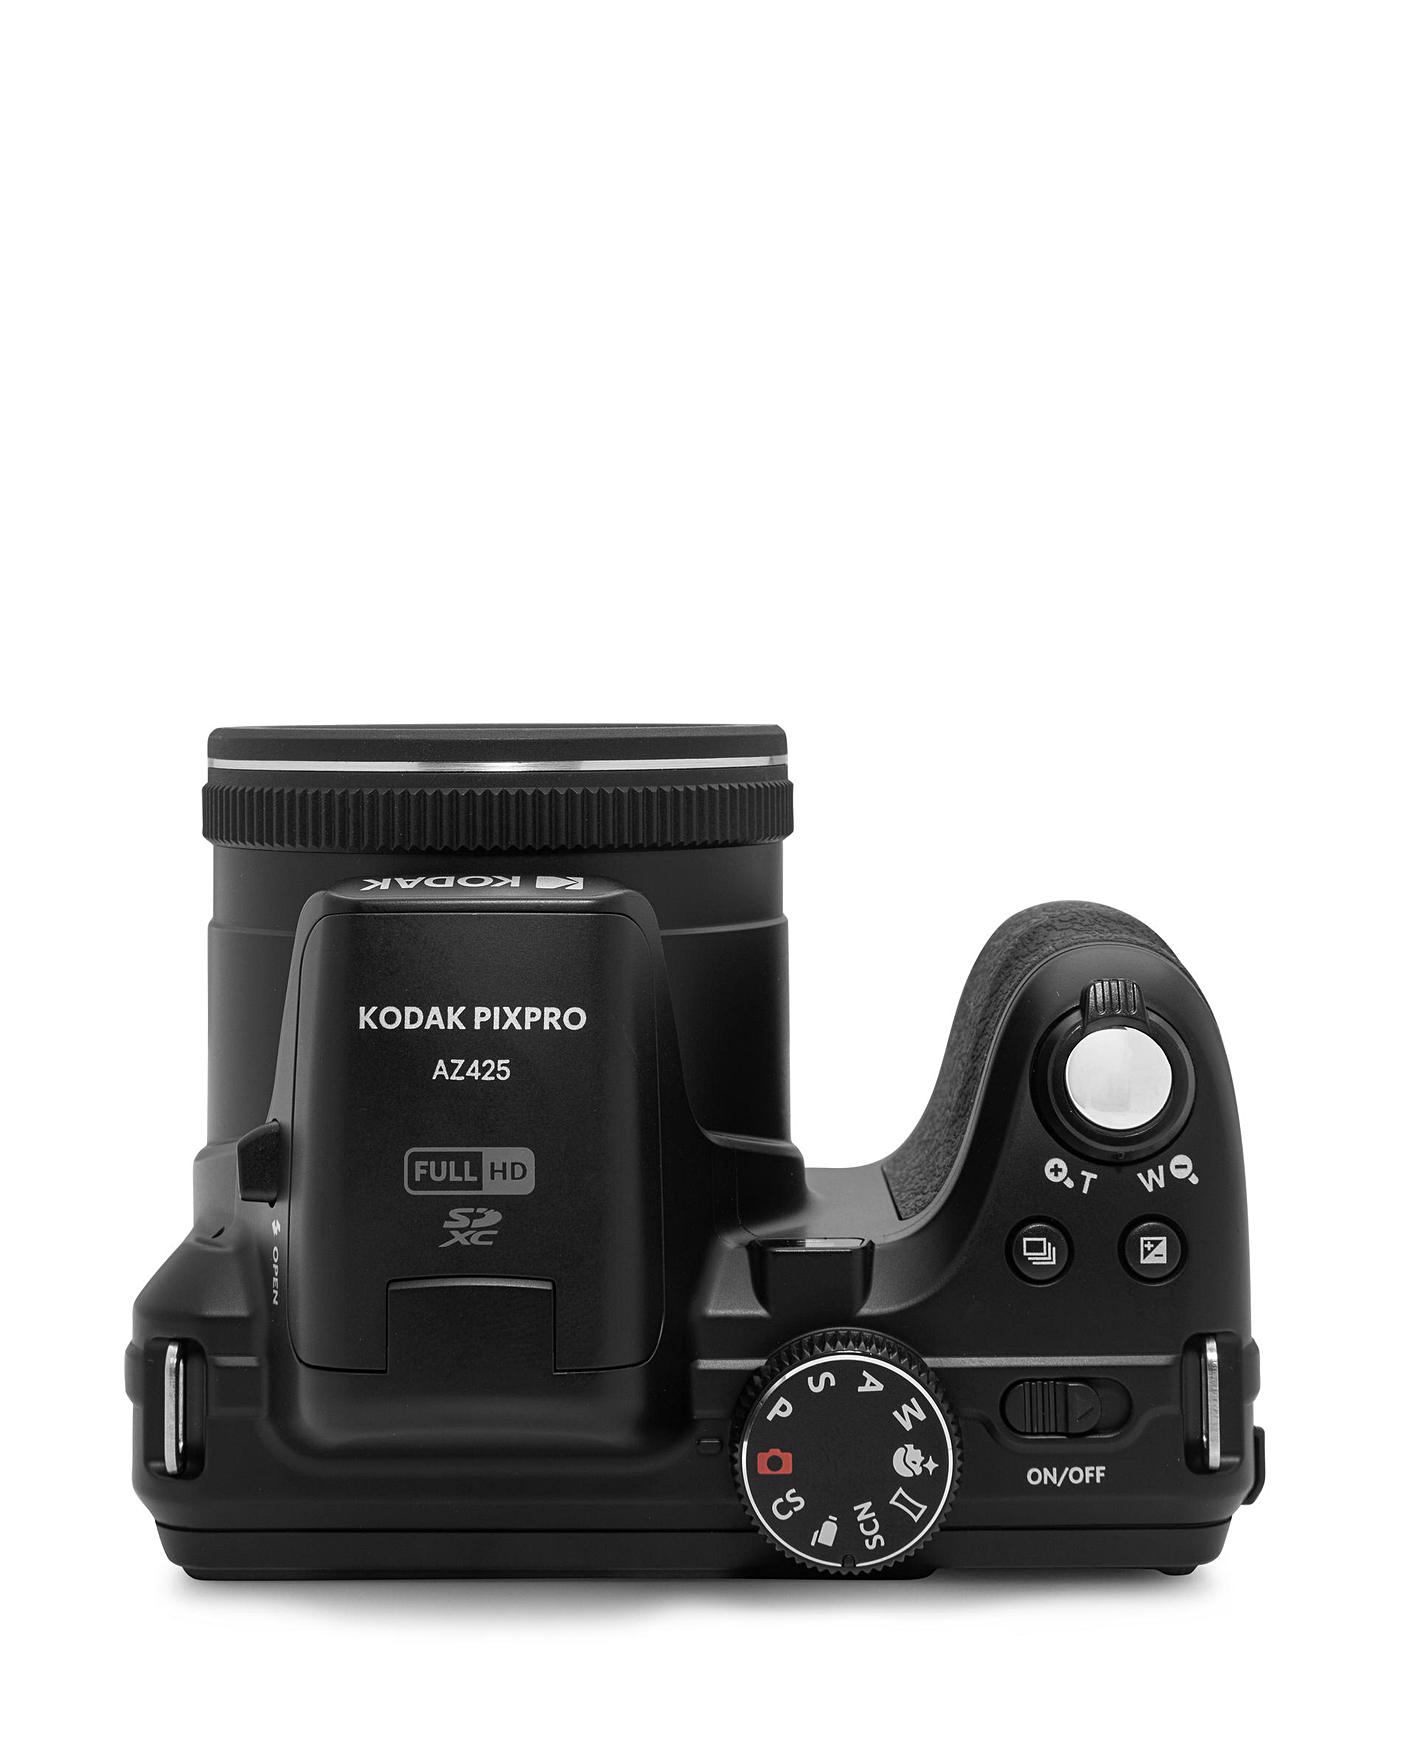 Kodak PIXPRO AZ425 20.7 Megapixel Bridge Camera, Black